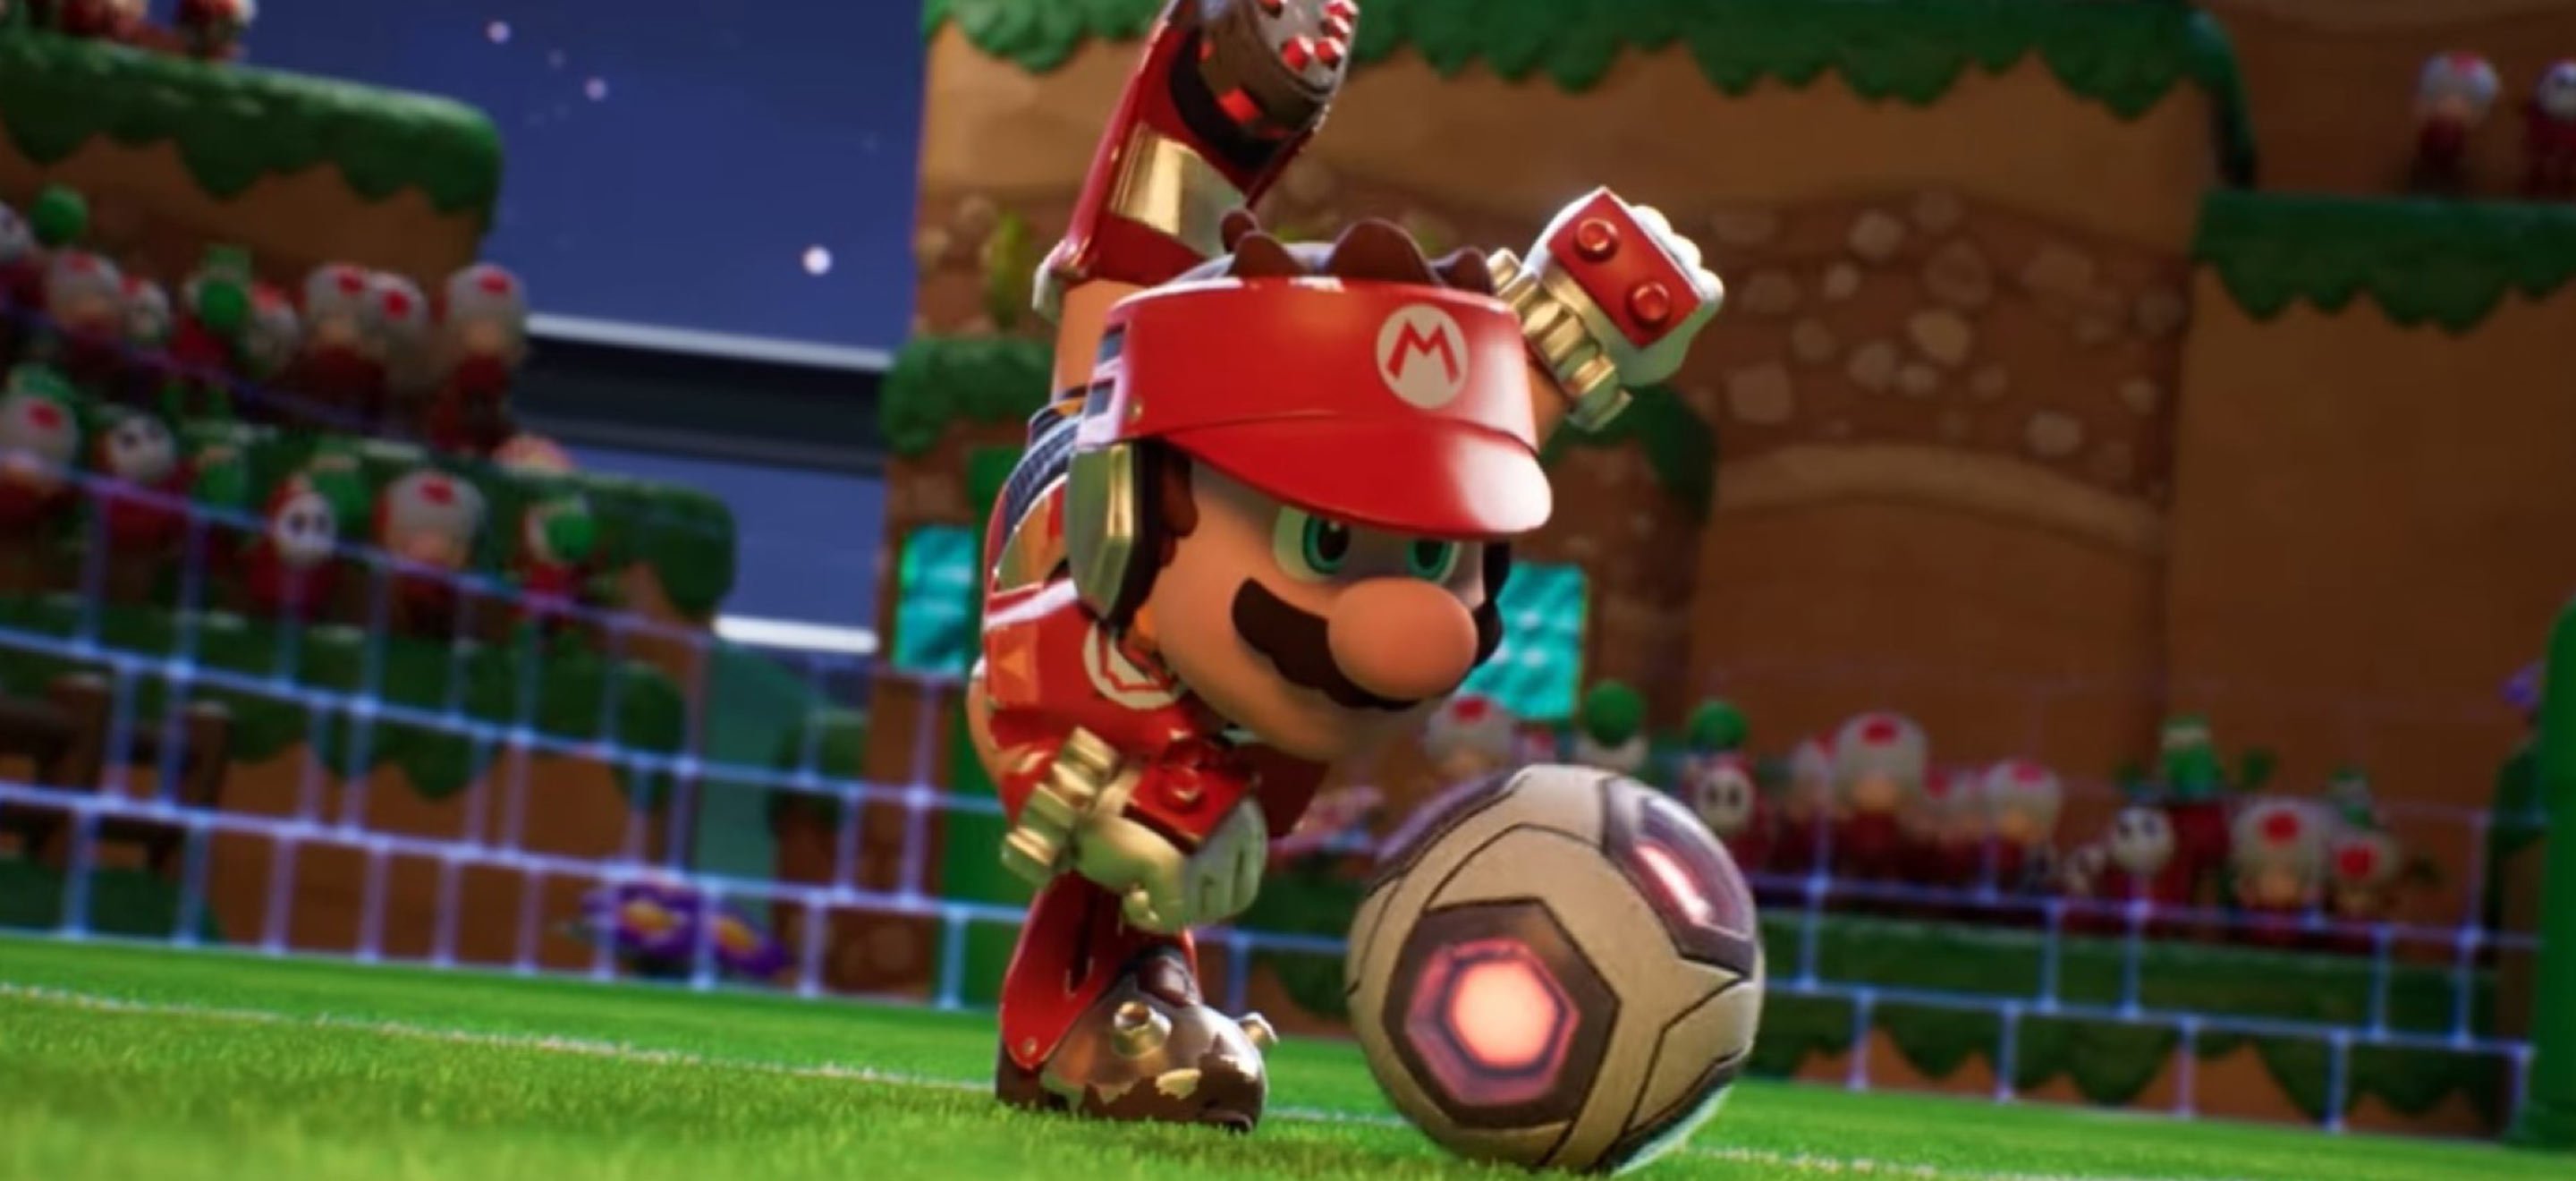 Es-tu sûr de bien connaître les jeux de sports avec Mario ?